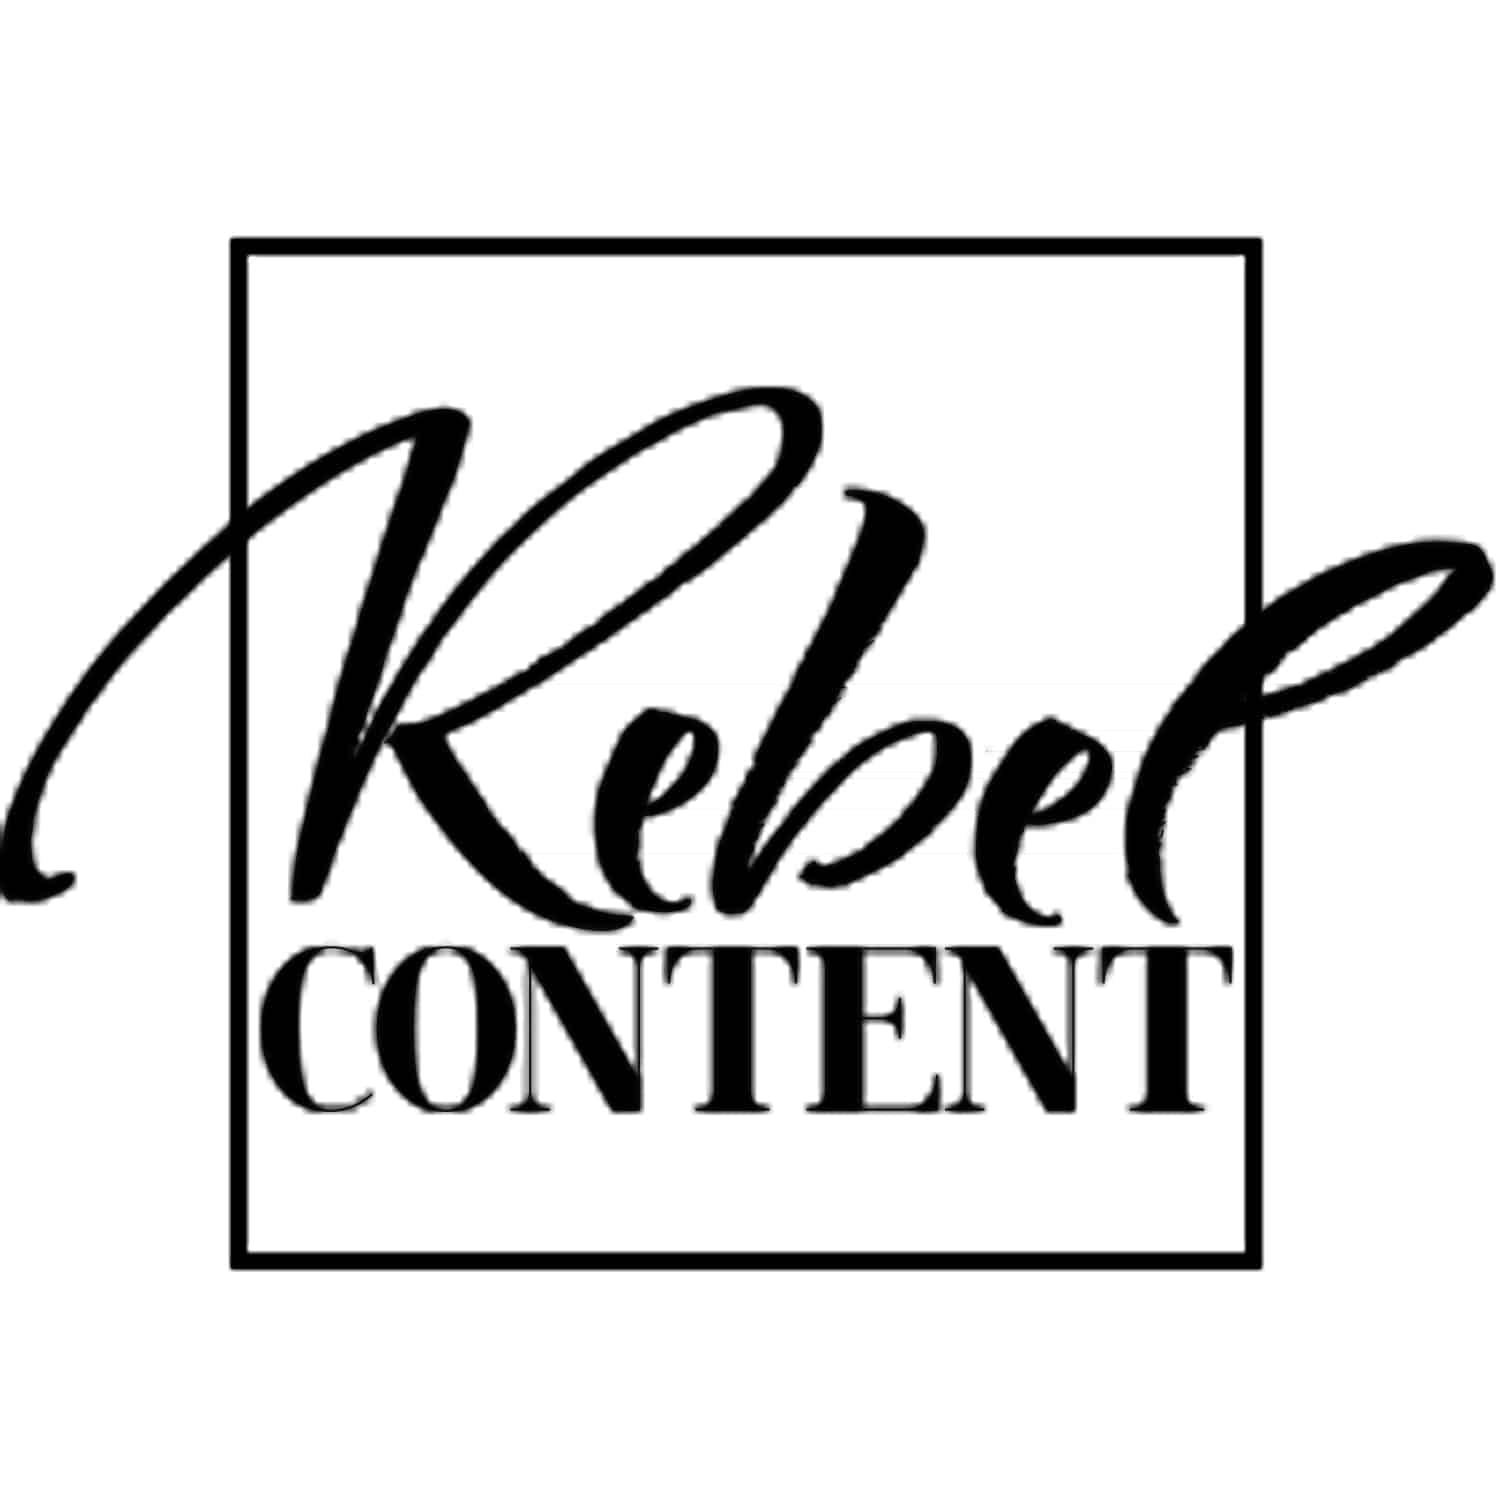 https://ivonnevandis.nl/wp-content/uploads/2019/07/rebel-content.jpg